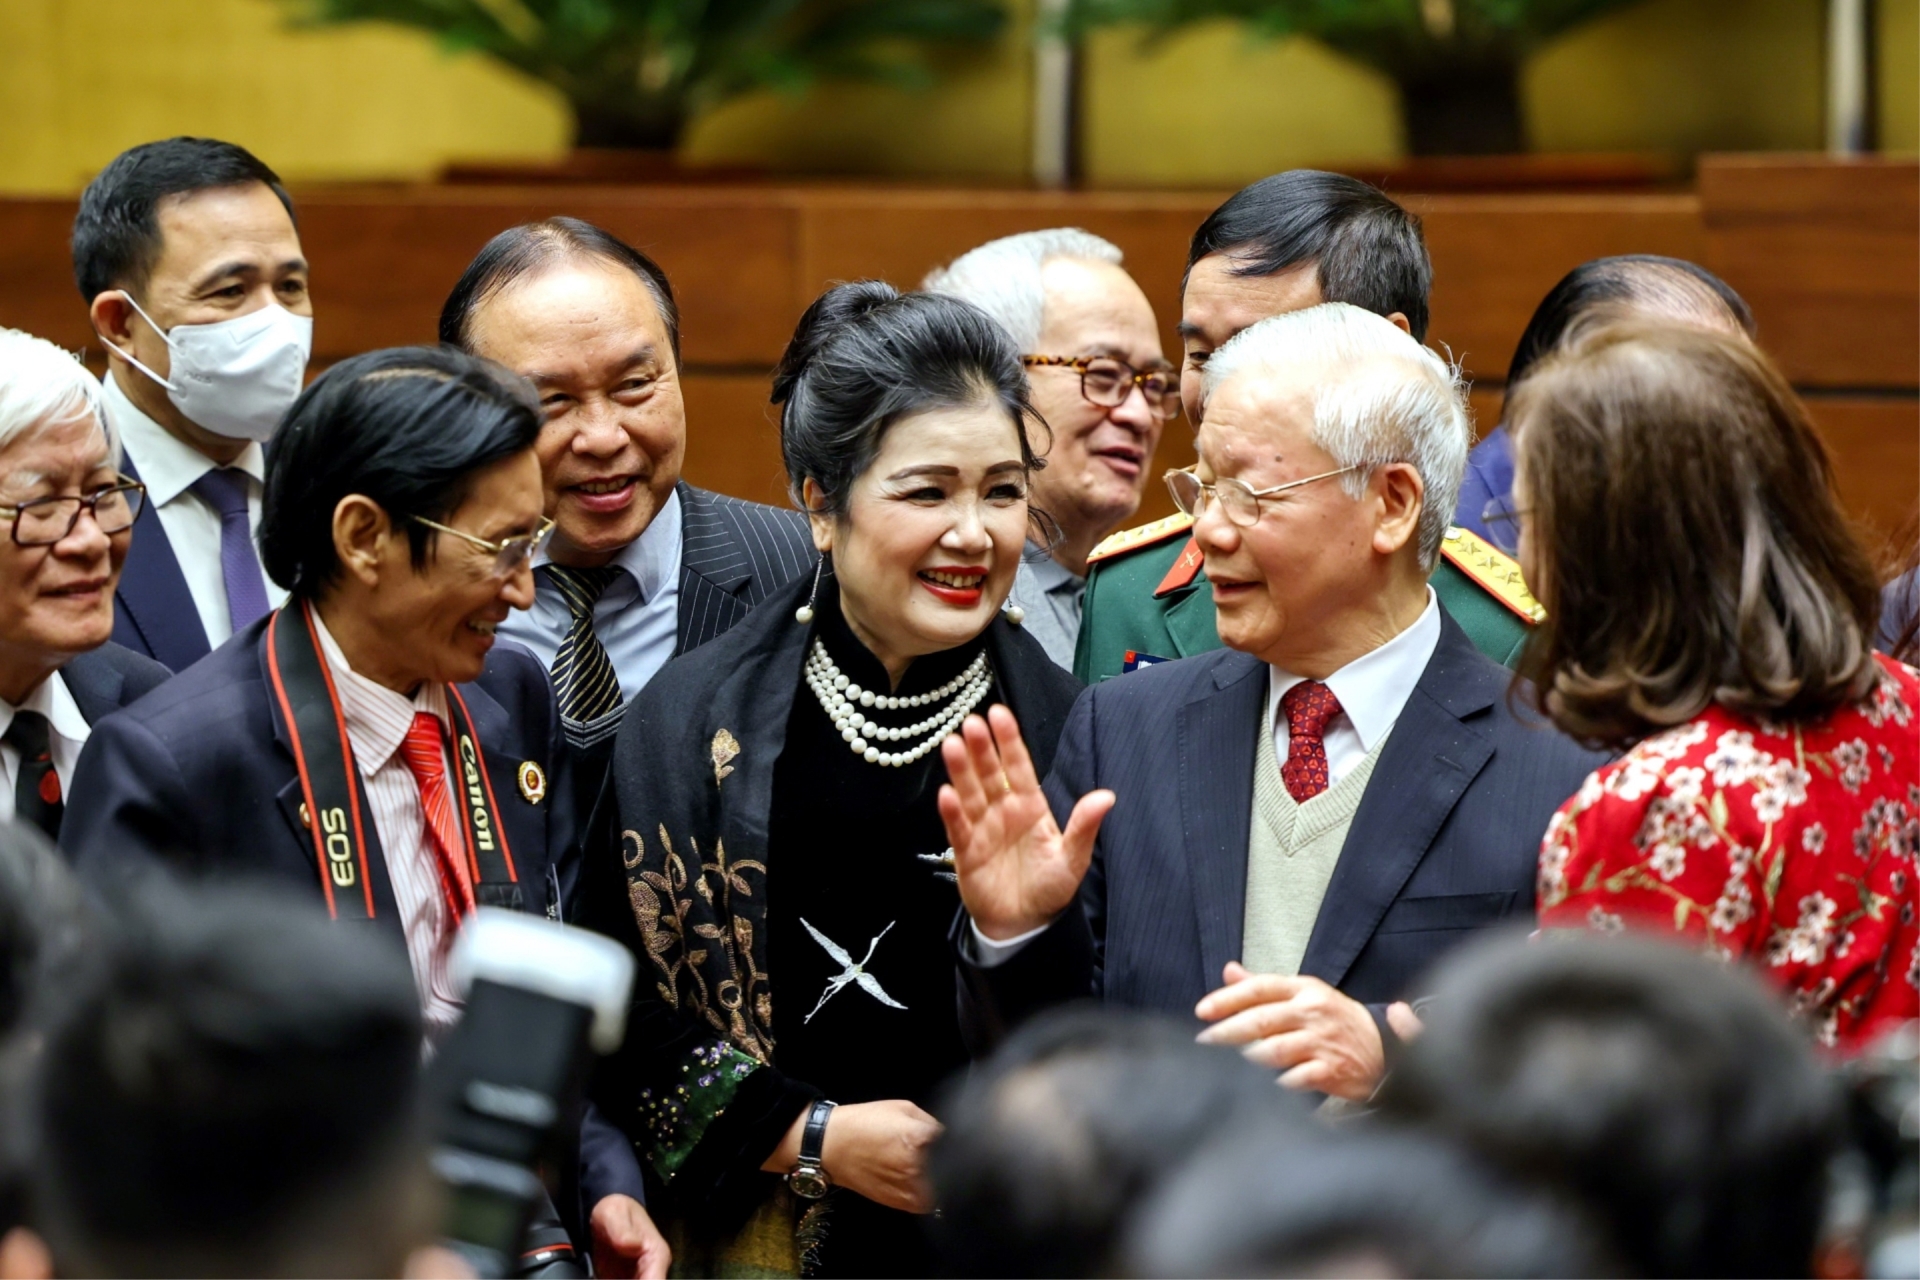 Tổng Bí thư Nguyễn Phú Trọng trò chuyện với các đại biểu tham dự Hội nghị văn hóa toàn quốc tổ chức sáng 24-11 tại Nhà Quốc hội.